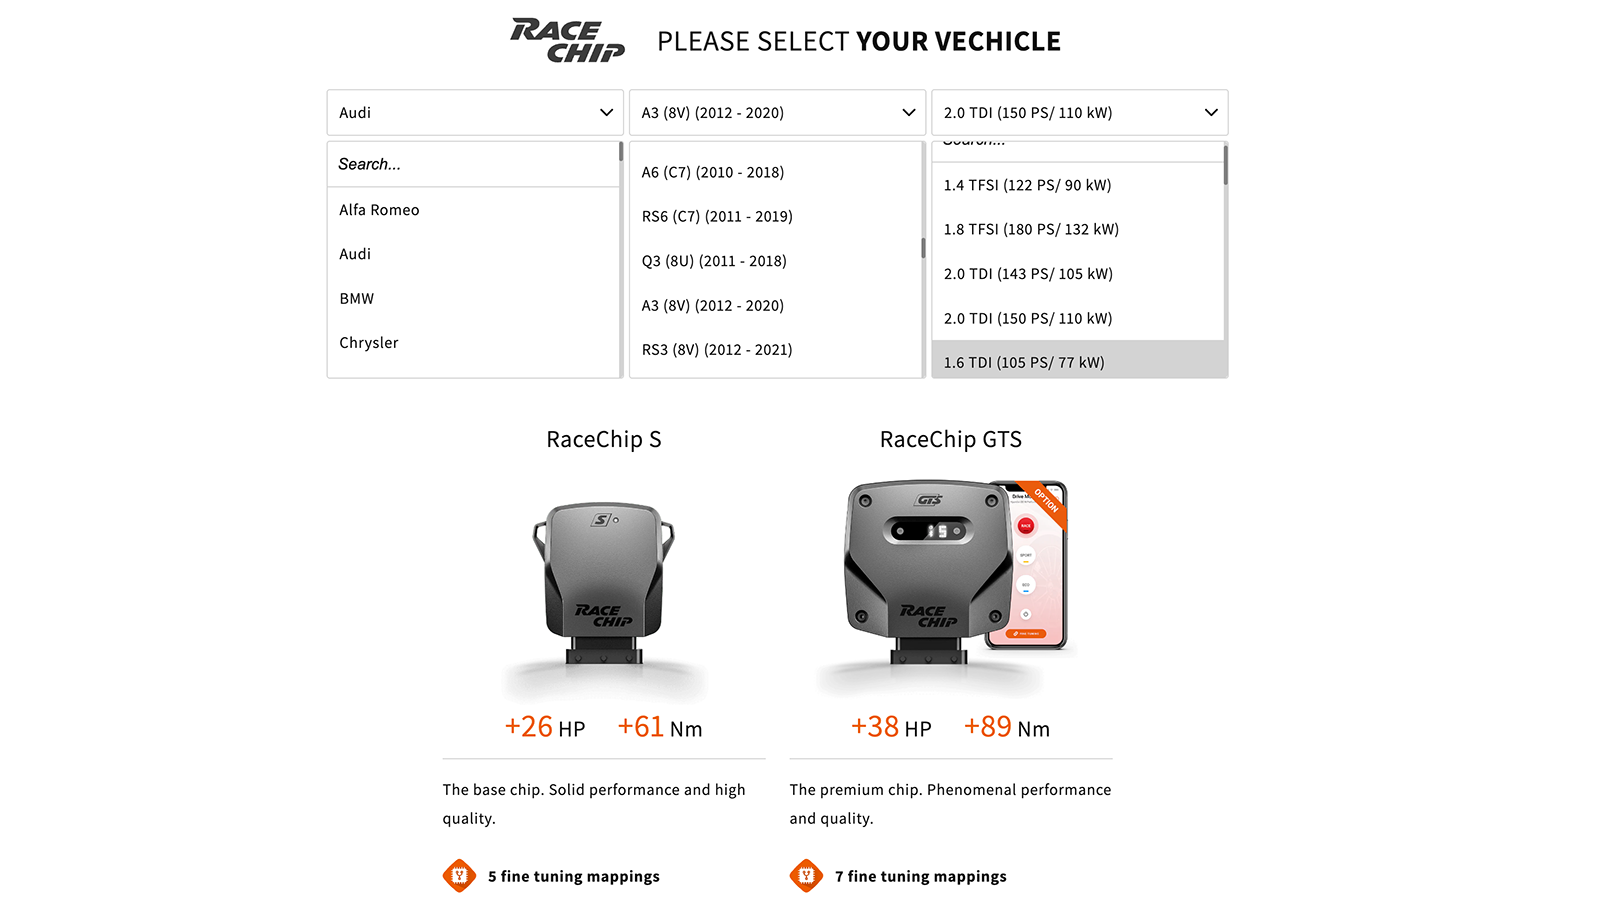 racechip vehicle select